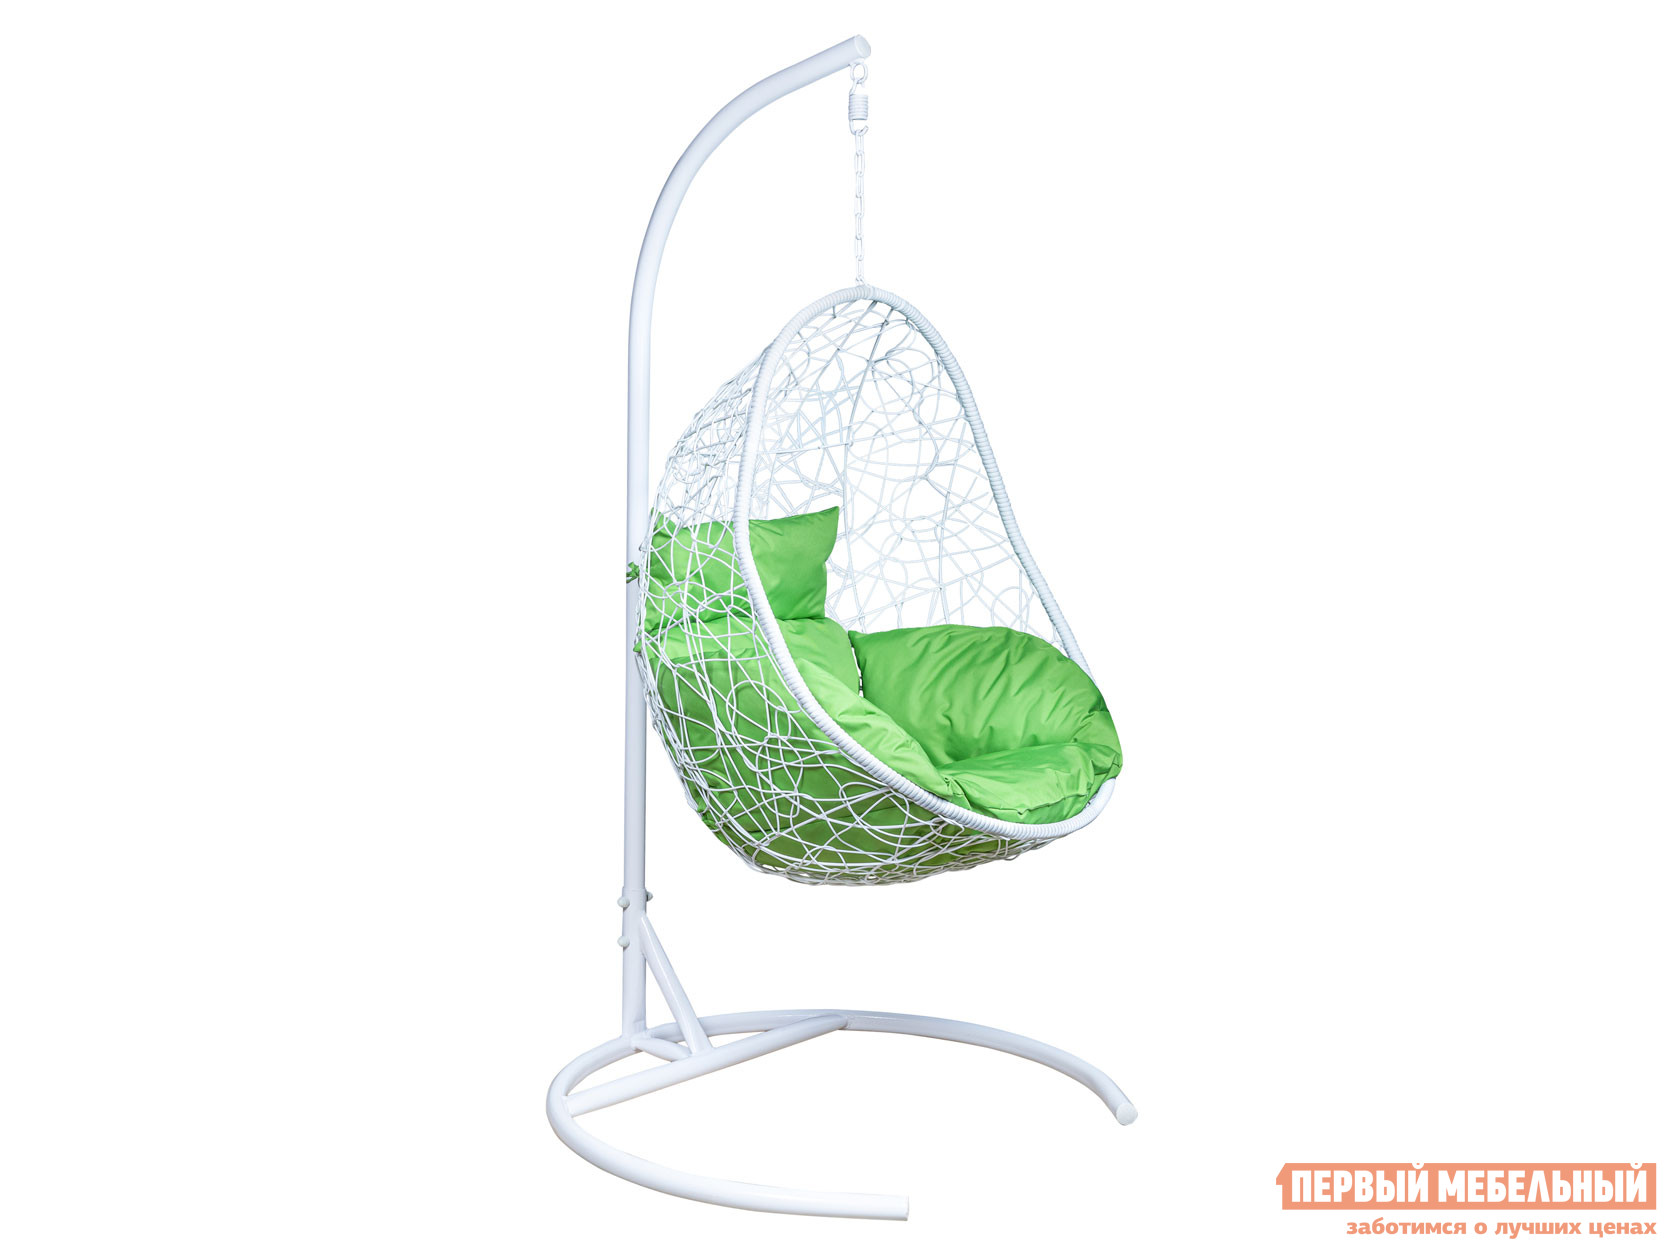 

Подвесное кресло Подвесное кресло LESET Сaoha Белый, ротанг / Зеленое яблоко, ткань, Подвесное кресло LESET Сaoha Белый, ротанг / Зеленое яблоко, ткань